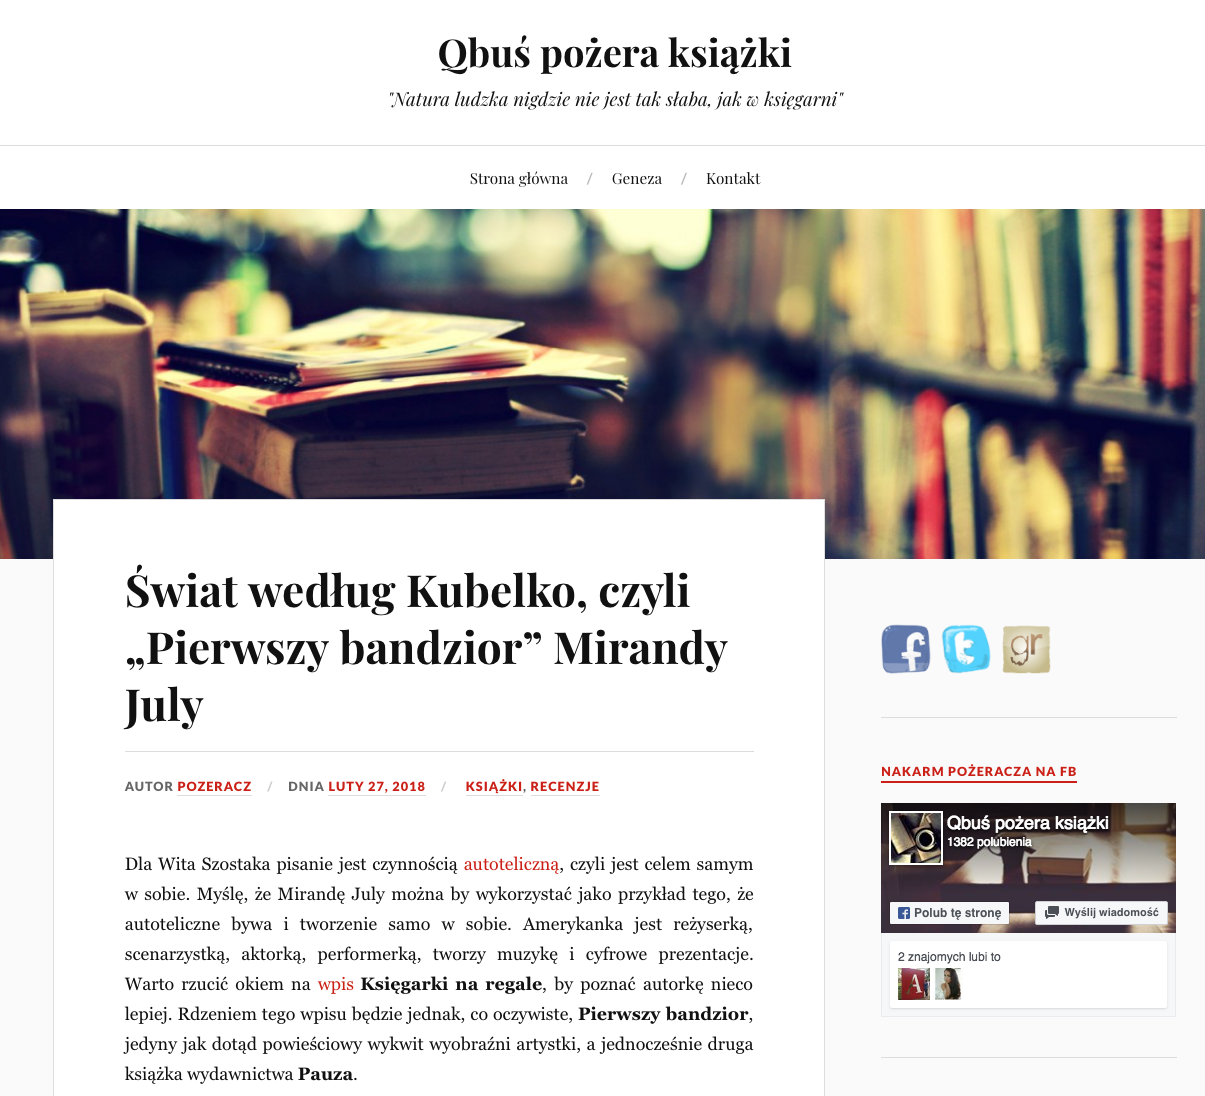 Świat według Kubelko czyli Pierwszy bandzior Mirandy July – Qbuś pożera książki